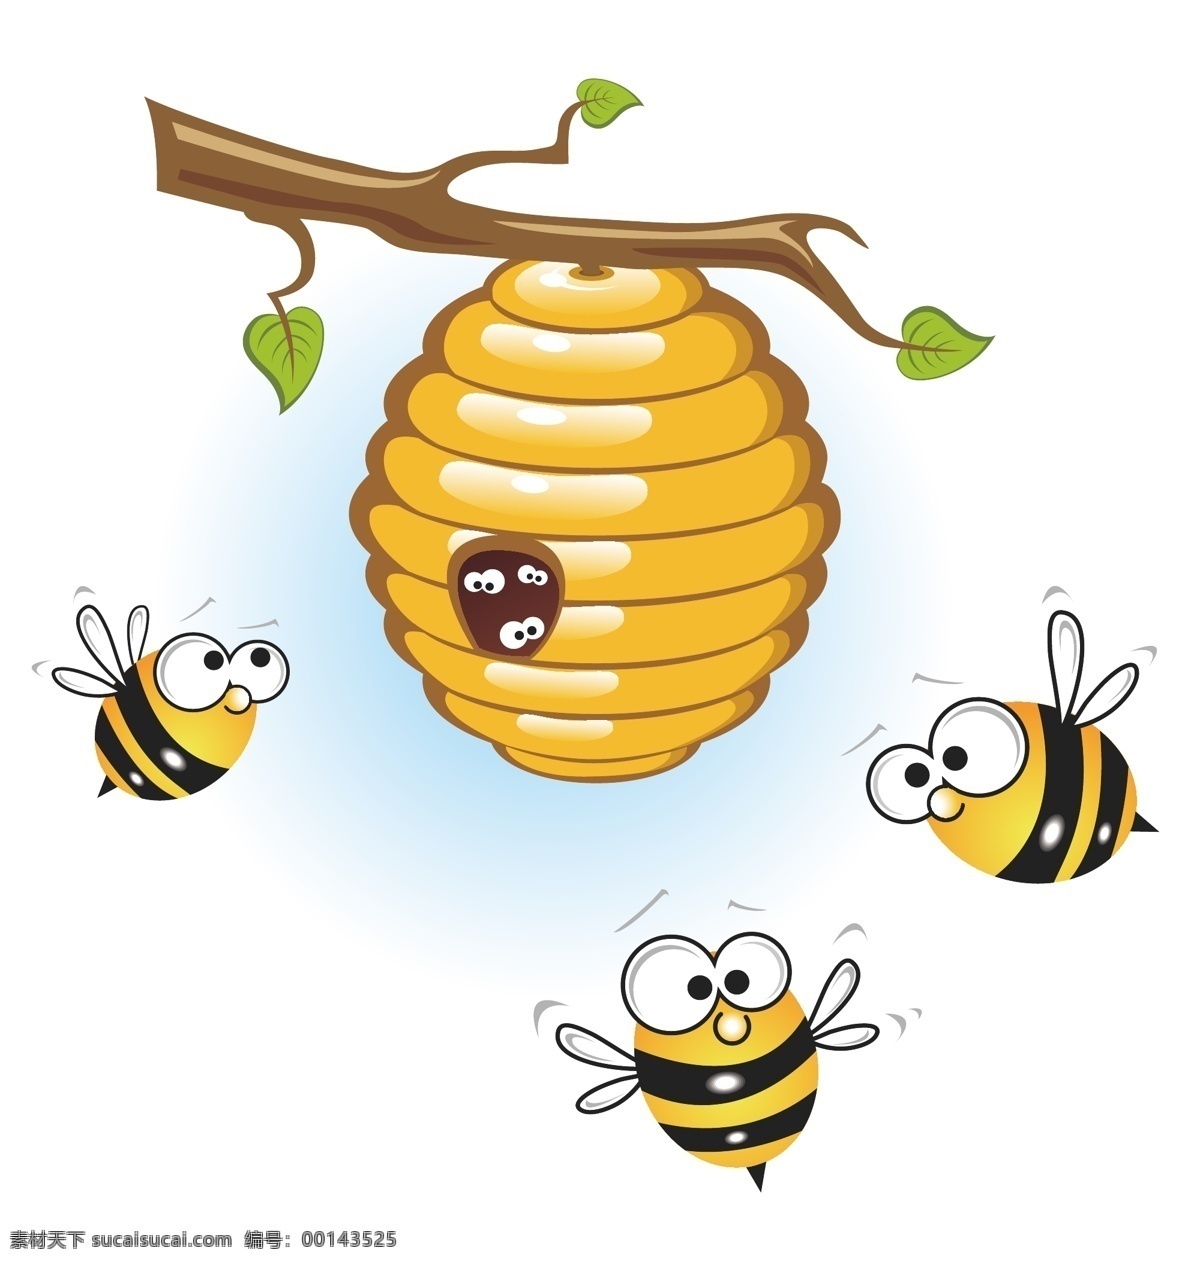 蜂蜜海报 蜂蜜展板 蜂蜜广告 蜂蜜美食漫画 蜜蜂图片 蜂蜜模板 蜂蜜制作 蜂蜜工艺 蜂蜜包装 蜂蜜展架 野生蜂蜜 天然蜂蜜 土蜂蜜 蜂蜜插画 蜂蜜文化 蜂蜜图片 蜂蜜养殖 蜂蜜设计 蜂蜜产品 蜂蜜礼品盒 蜂蜜制作工艺 蜂蜜素材 蜜蜂 蜜蜂养殖 蜂王浆 蜂蜜 王浆 蜂蜜标签 蜂蜜瓶贴 蜂蜜图